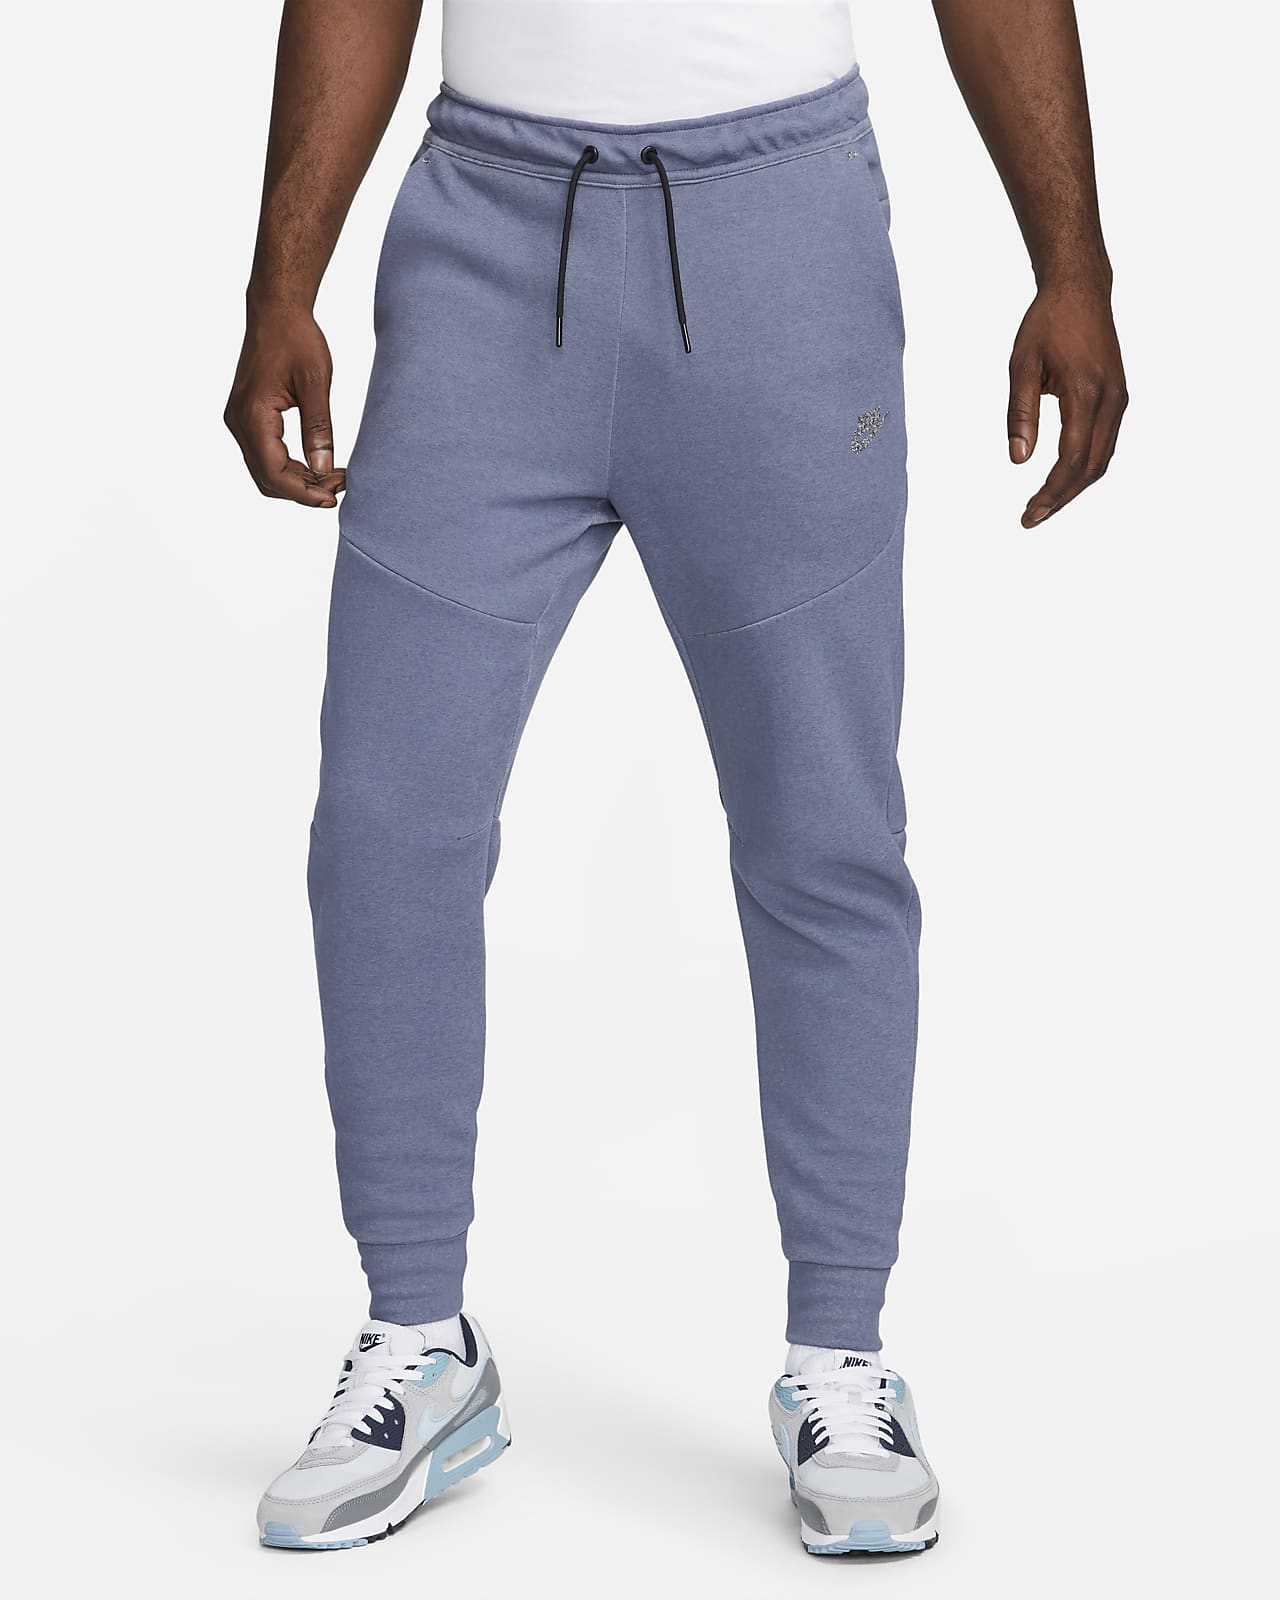 Nike Sportswear Fleece Nike.com